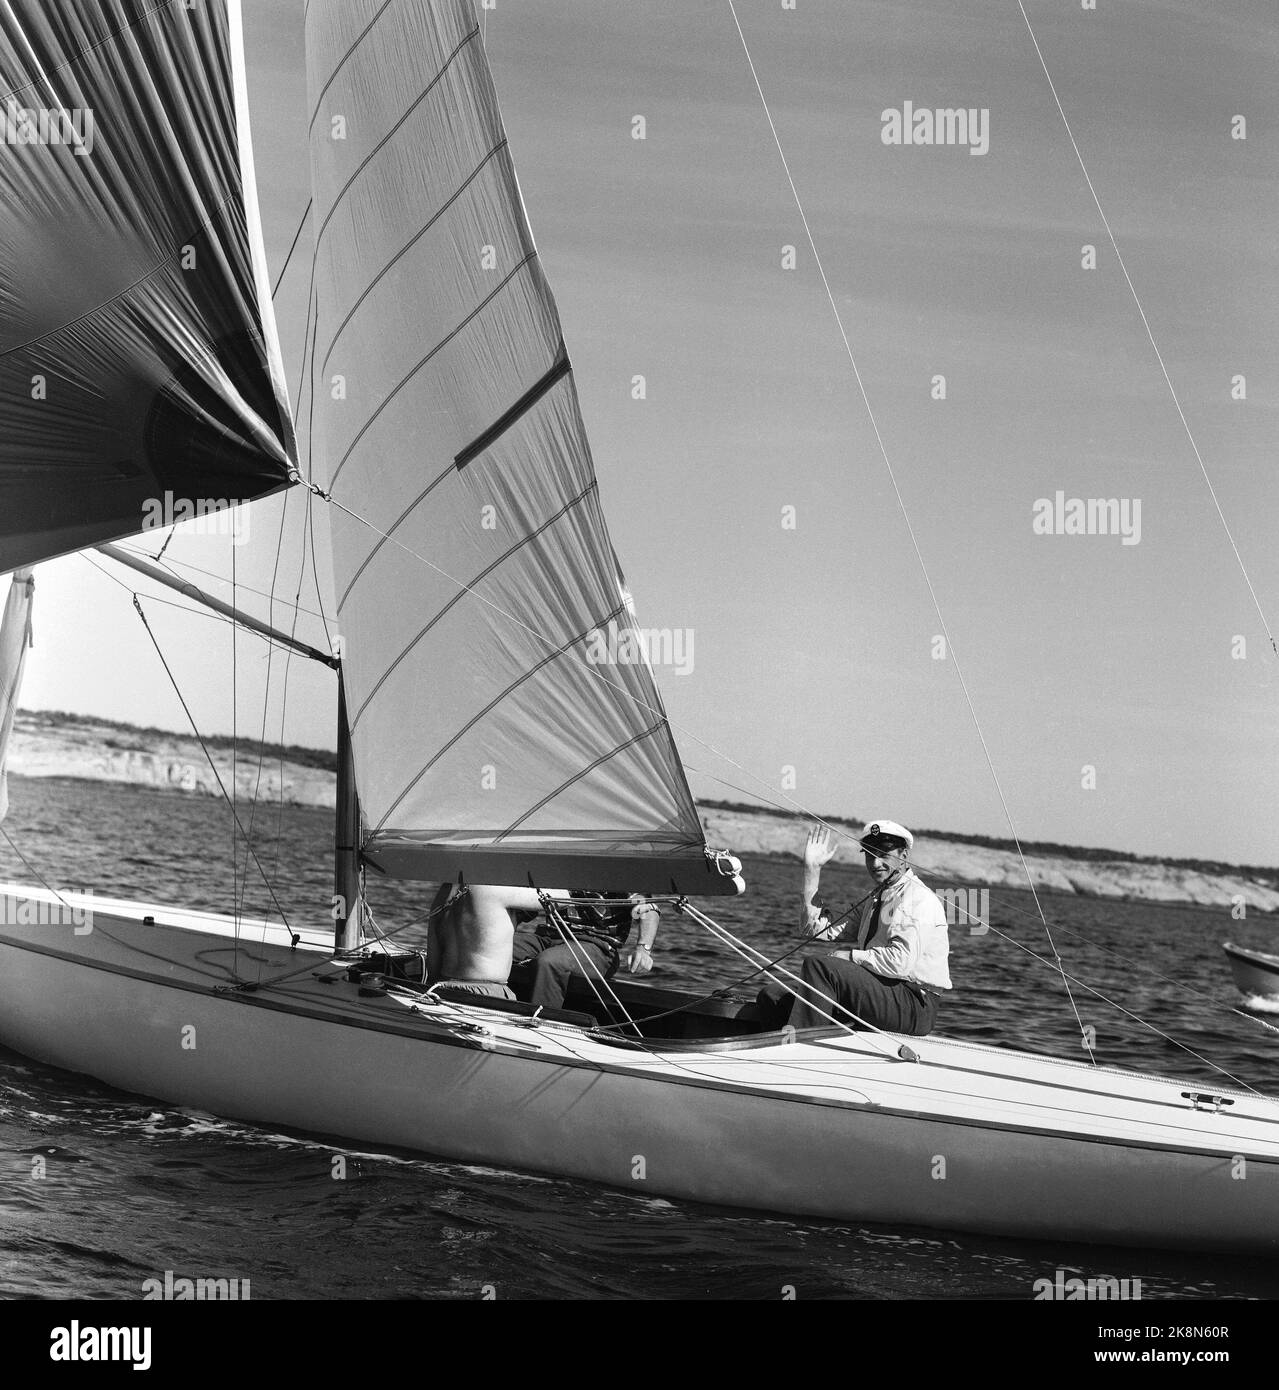 Hankø 4 luglio 1959. Il principe ereditario Harald partecipa alla regata di Hankø. Rappresenta la Norvegia in una Sailer trofeo e vince il Øresundspokalen. Questo significa che si sta così muovendo in alto come un forte prato olimpico. Foto: Aage Storløkken / corrente / NTB Foto Stock